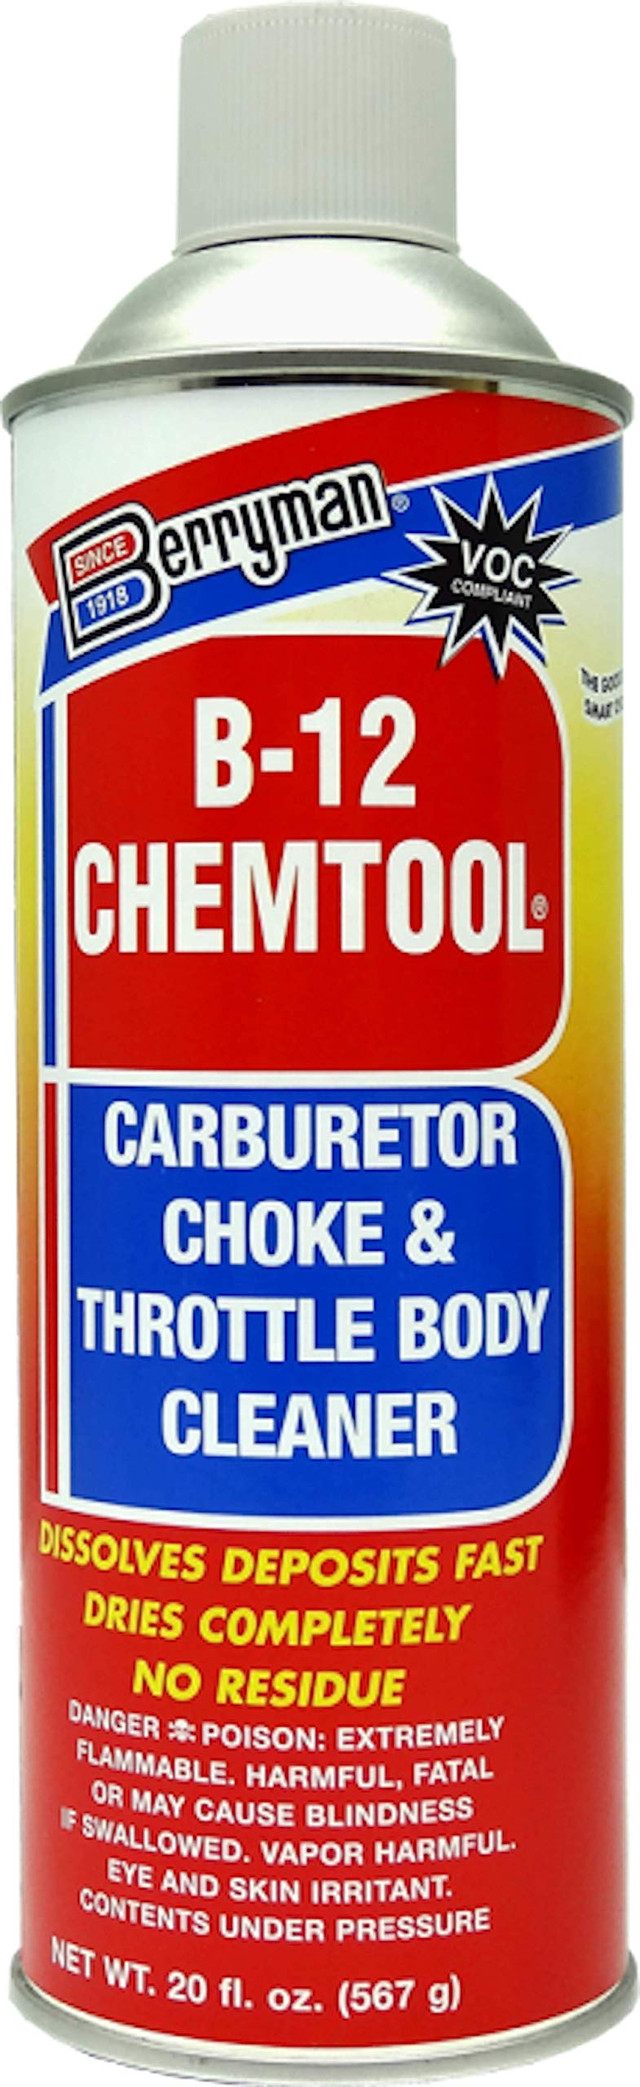 Limpiador de carburador BERRYMAN b-12 chemtool - ca (0120c)